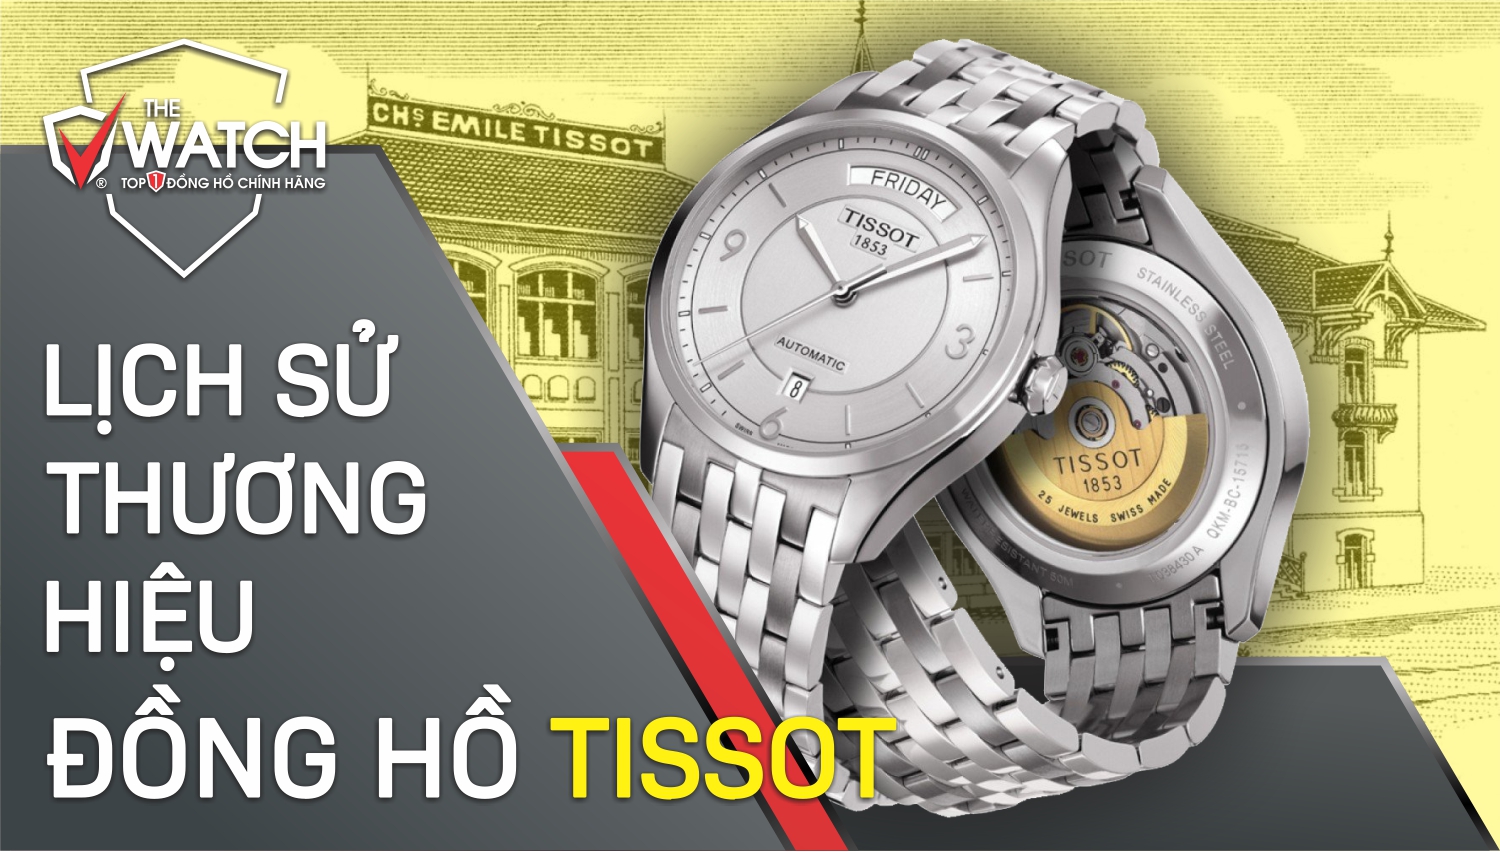 Đồng hồ Tissot là thương hiệu của nước nào? Cách nhân biết đồng hồ Tissot  chuẩn 100%